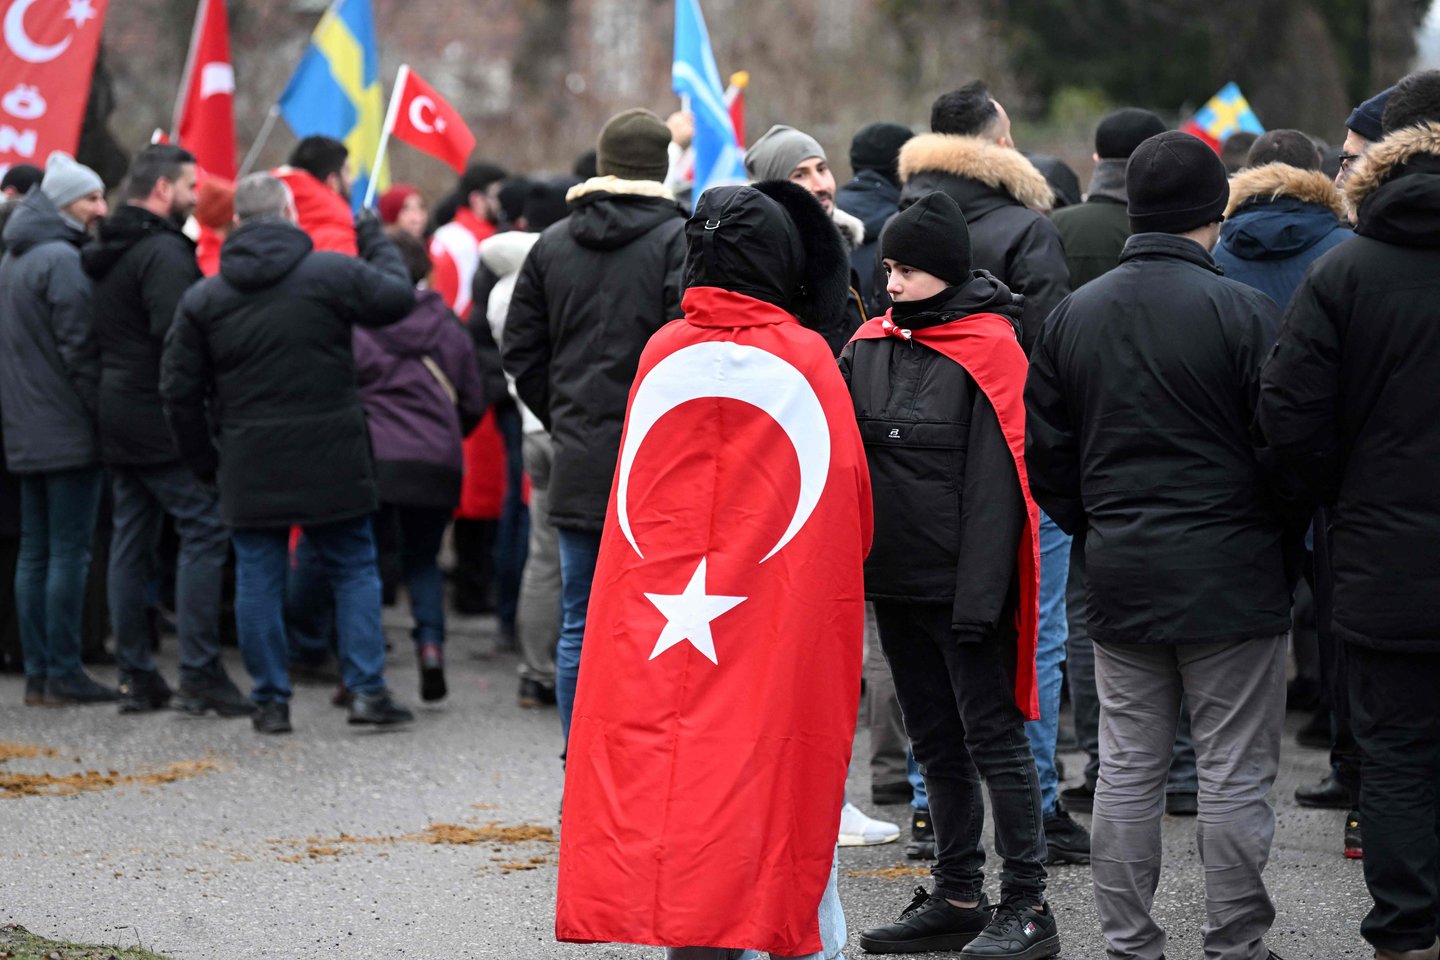 Turkija perspėjo savo piliečius dėl galimų diskriminacinių išpuolių Europoje ir Jungtinėse Valstijose po virtinės islamofobinių atakų.<br>AFP/Scanpix nuotr.